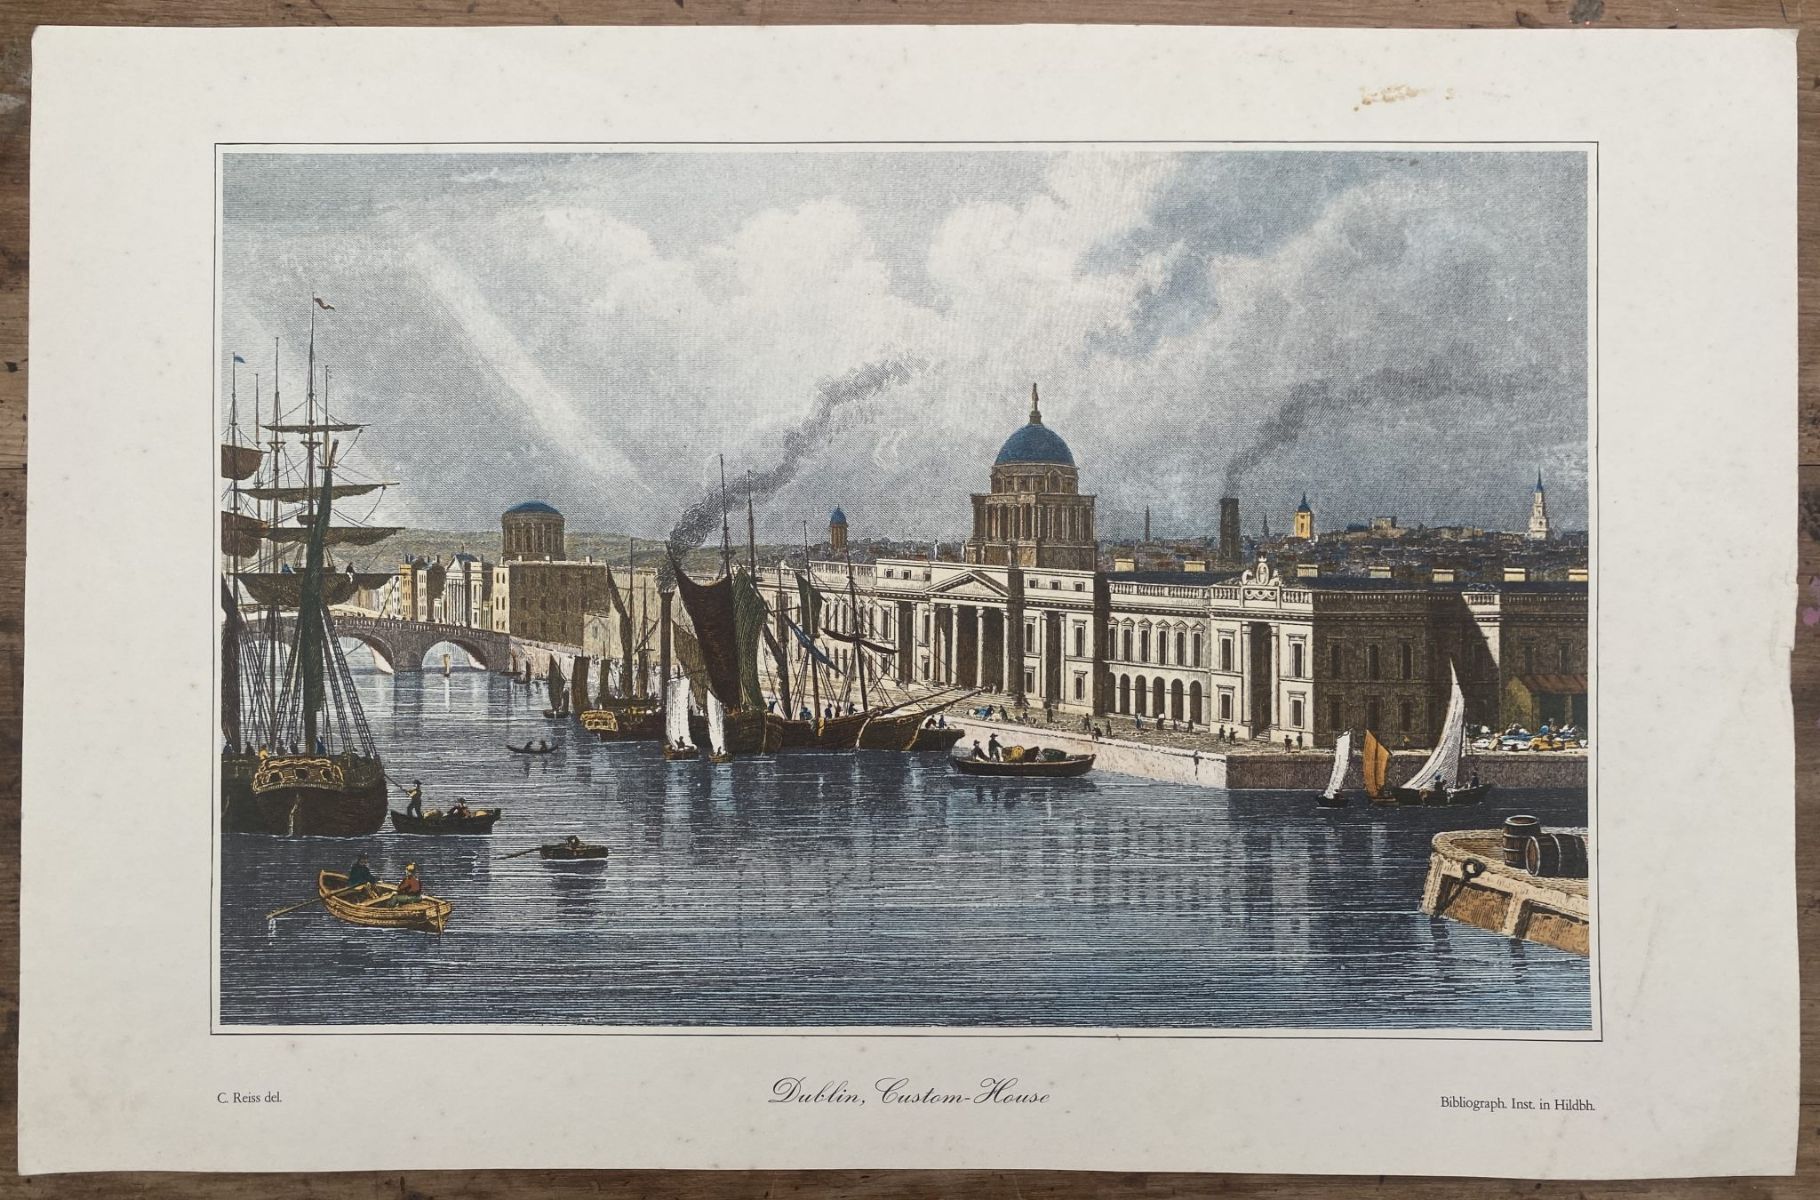 OLD PRINT: Dublin, Custom House 1850